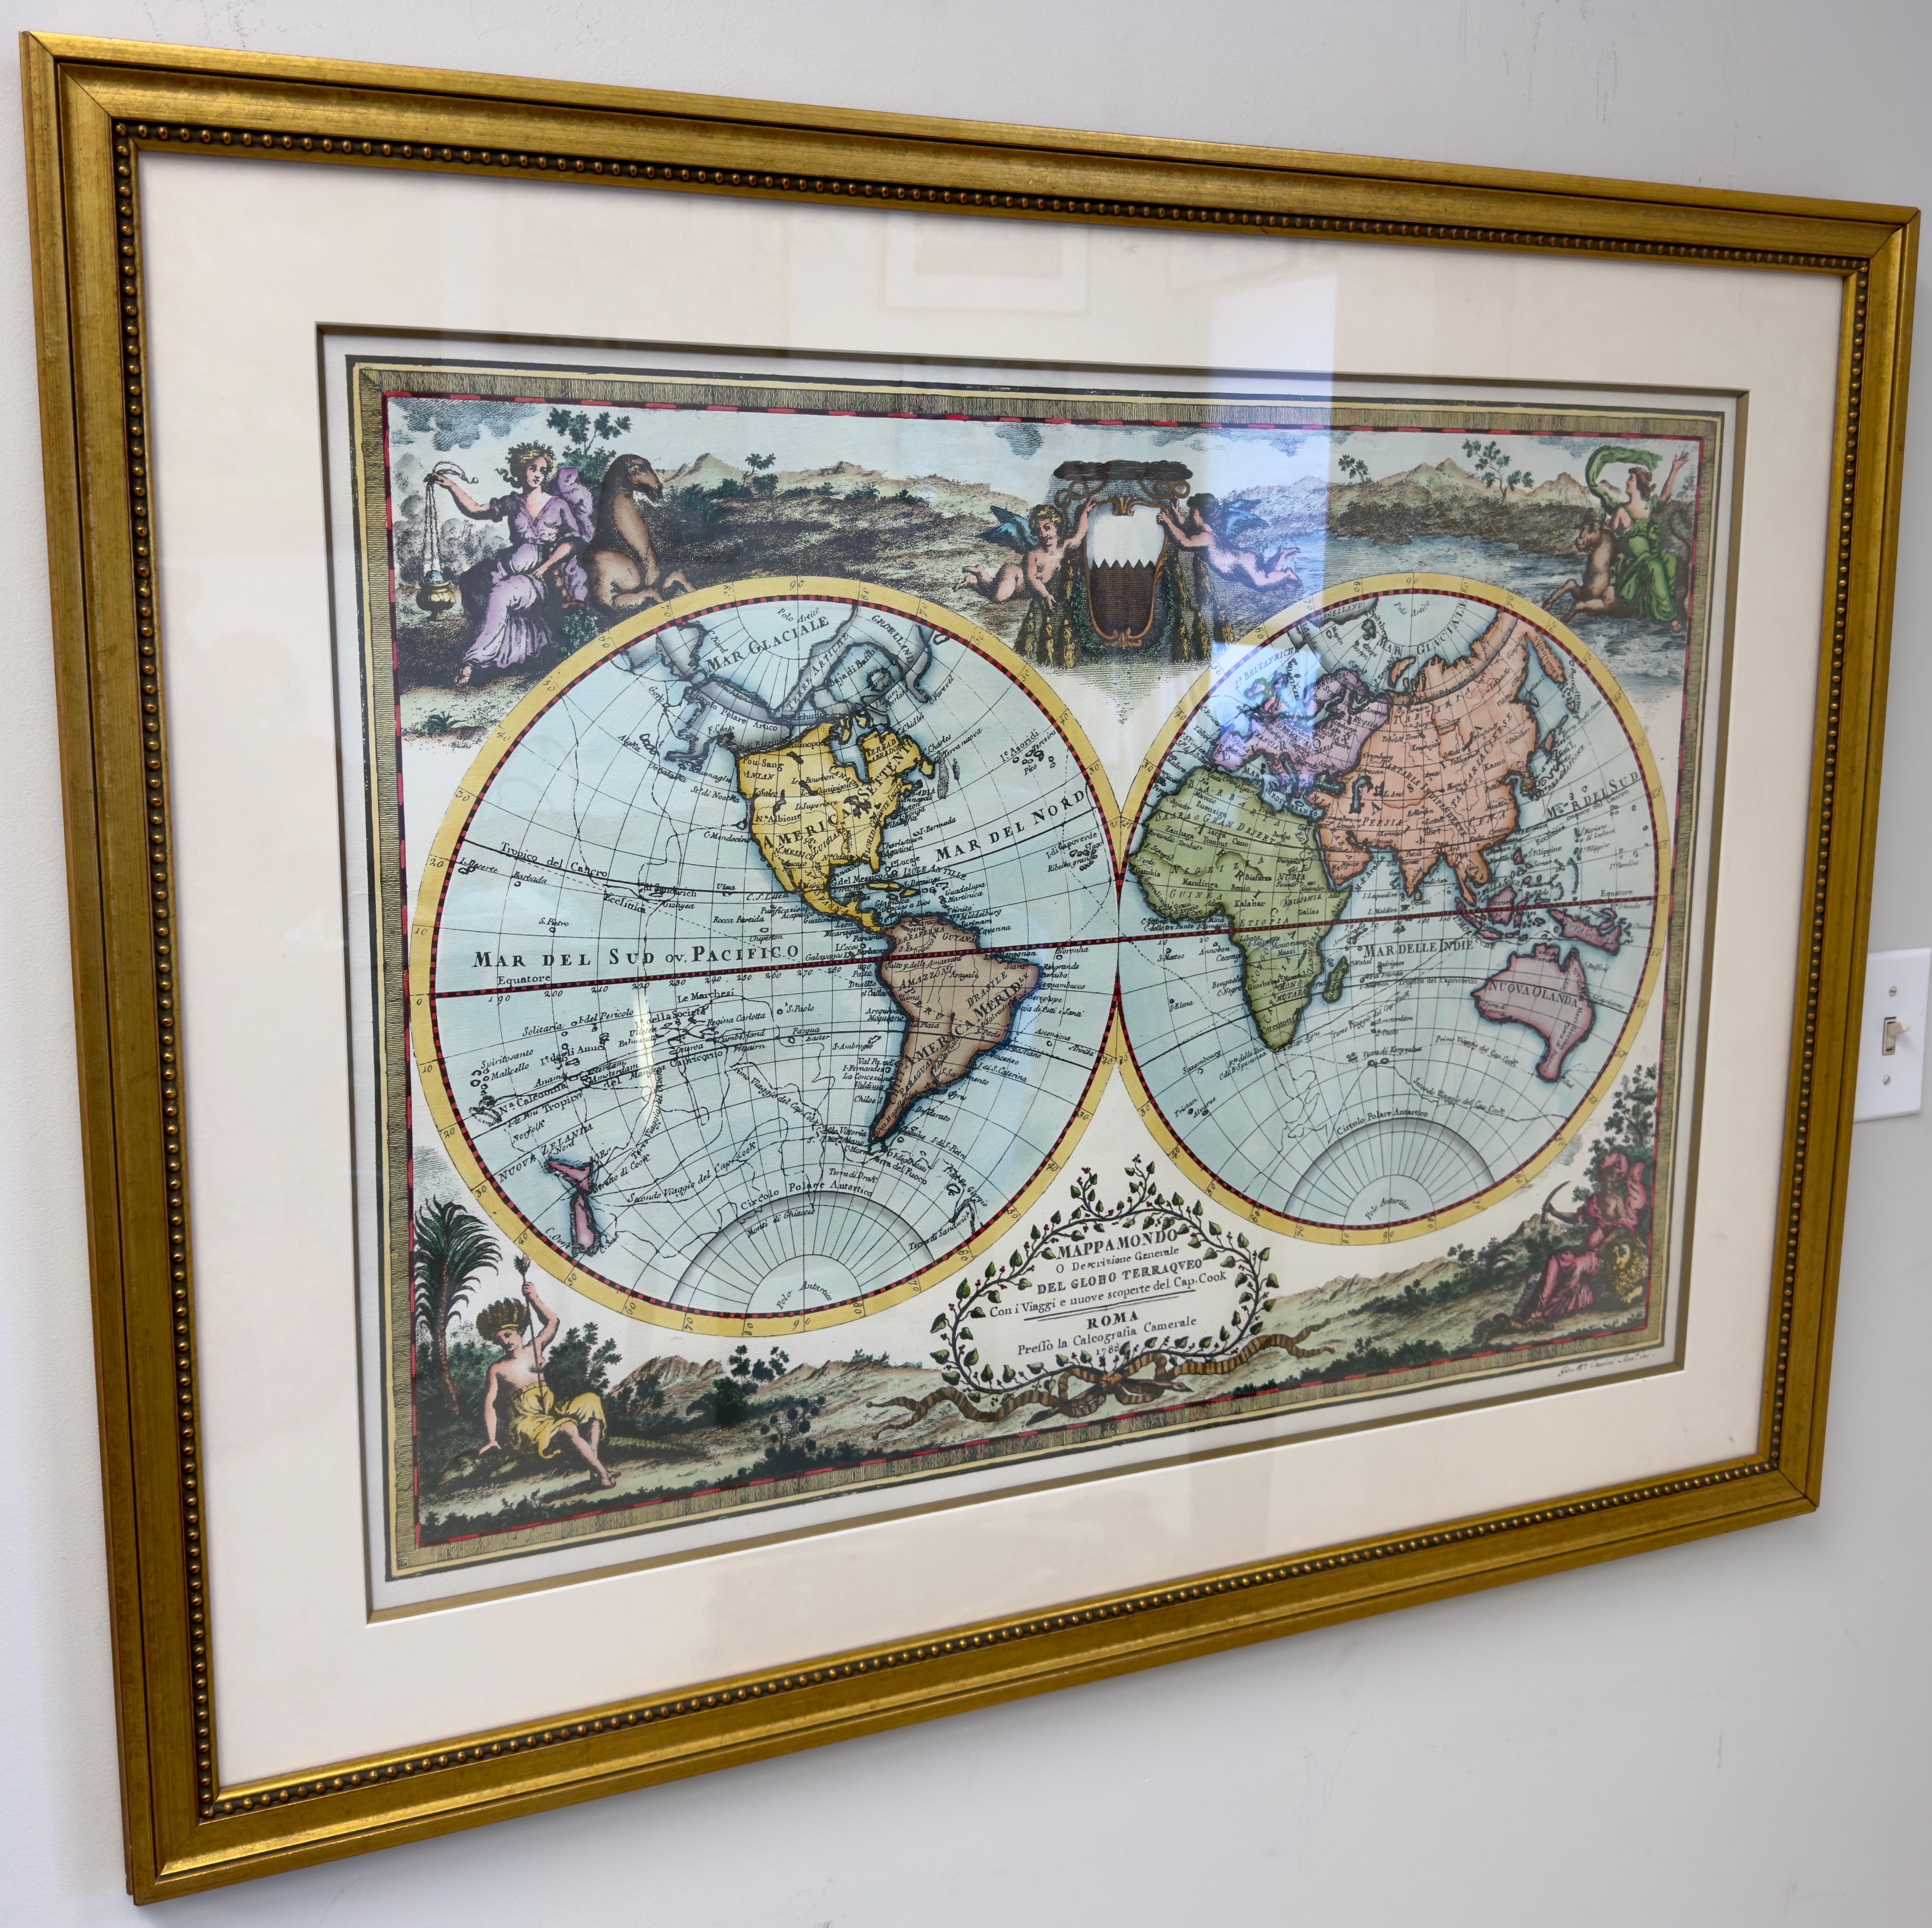 Eine alte Weltkarte mit doppelter Hemisphäre. Die Karte ist eine Reproduktion des Originals der Mapa Mondo aus dem Jahr 1788 in Rom, Italien. Die Karte ist mit Putten, Engeln und Dämonen verziert. Eine Gartenlandschaft umrahmt die doppelten runden